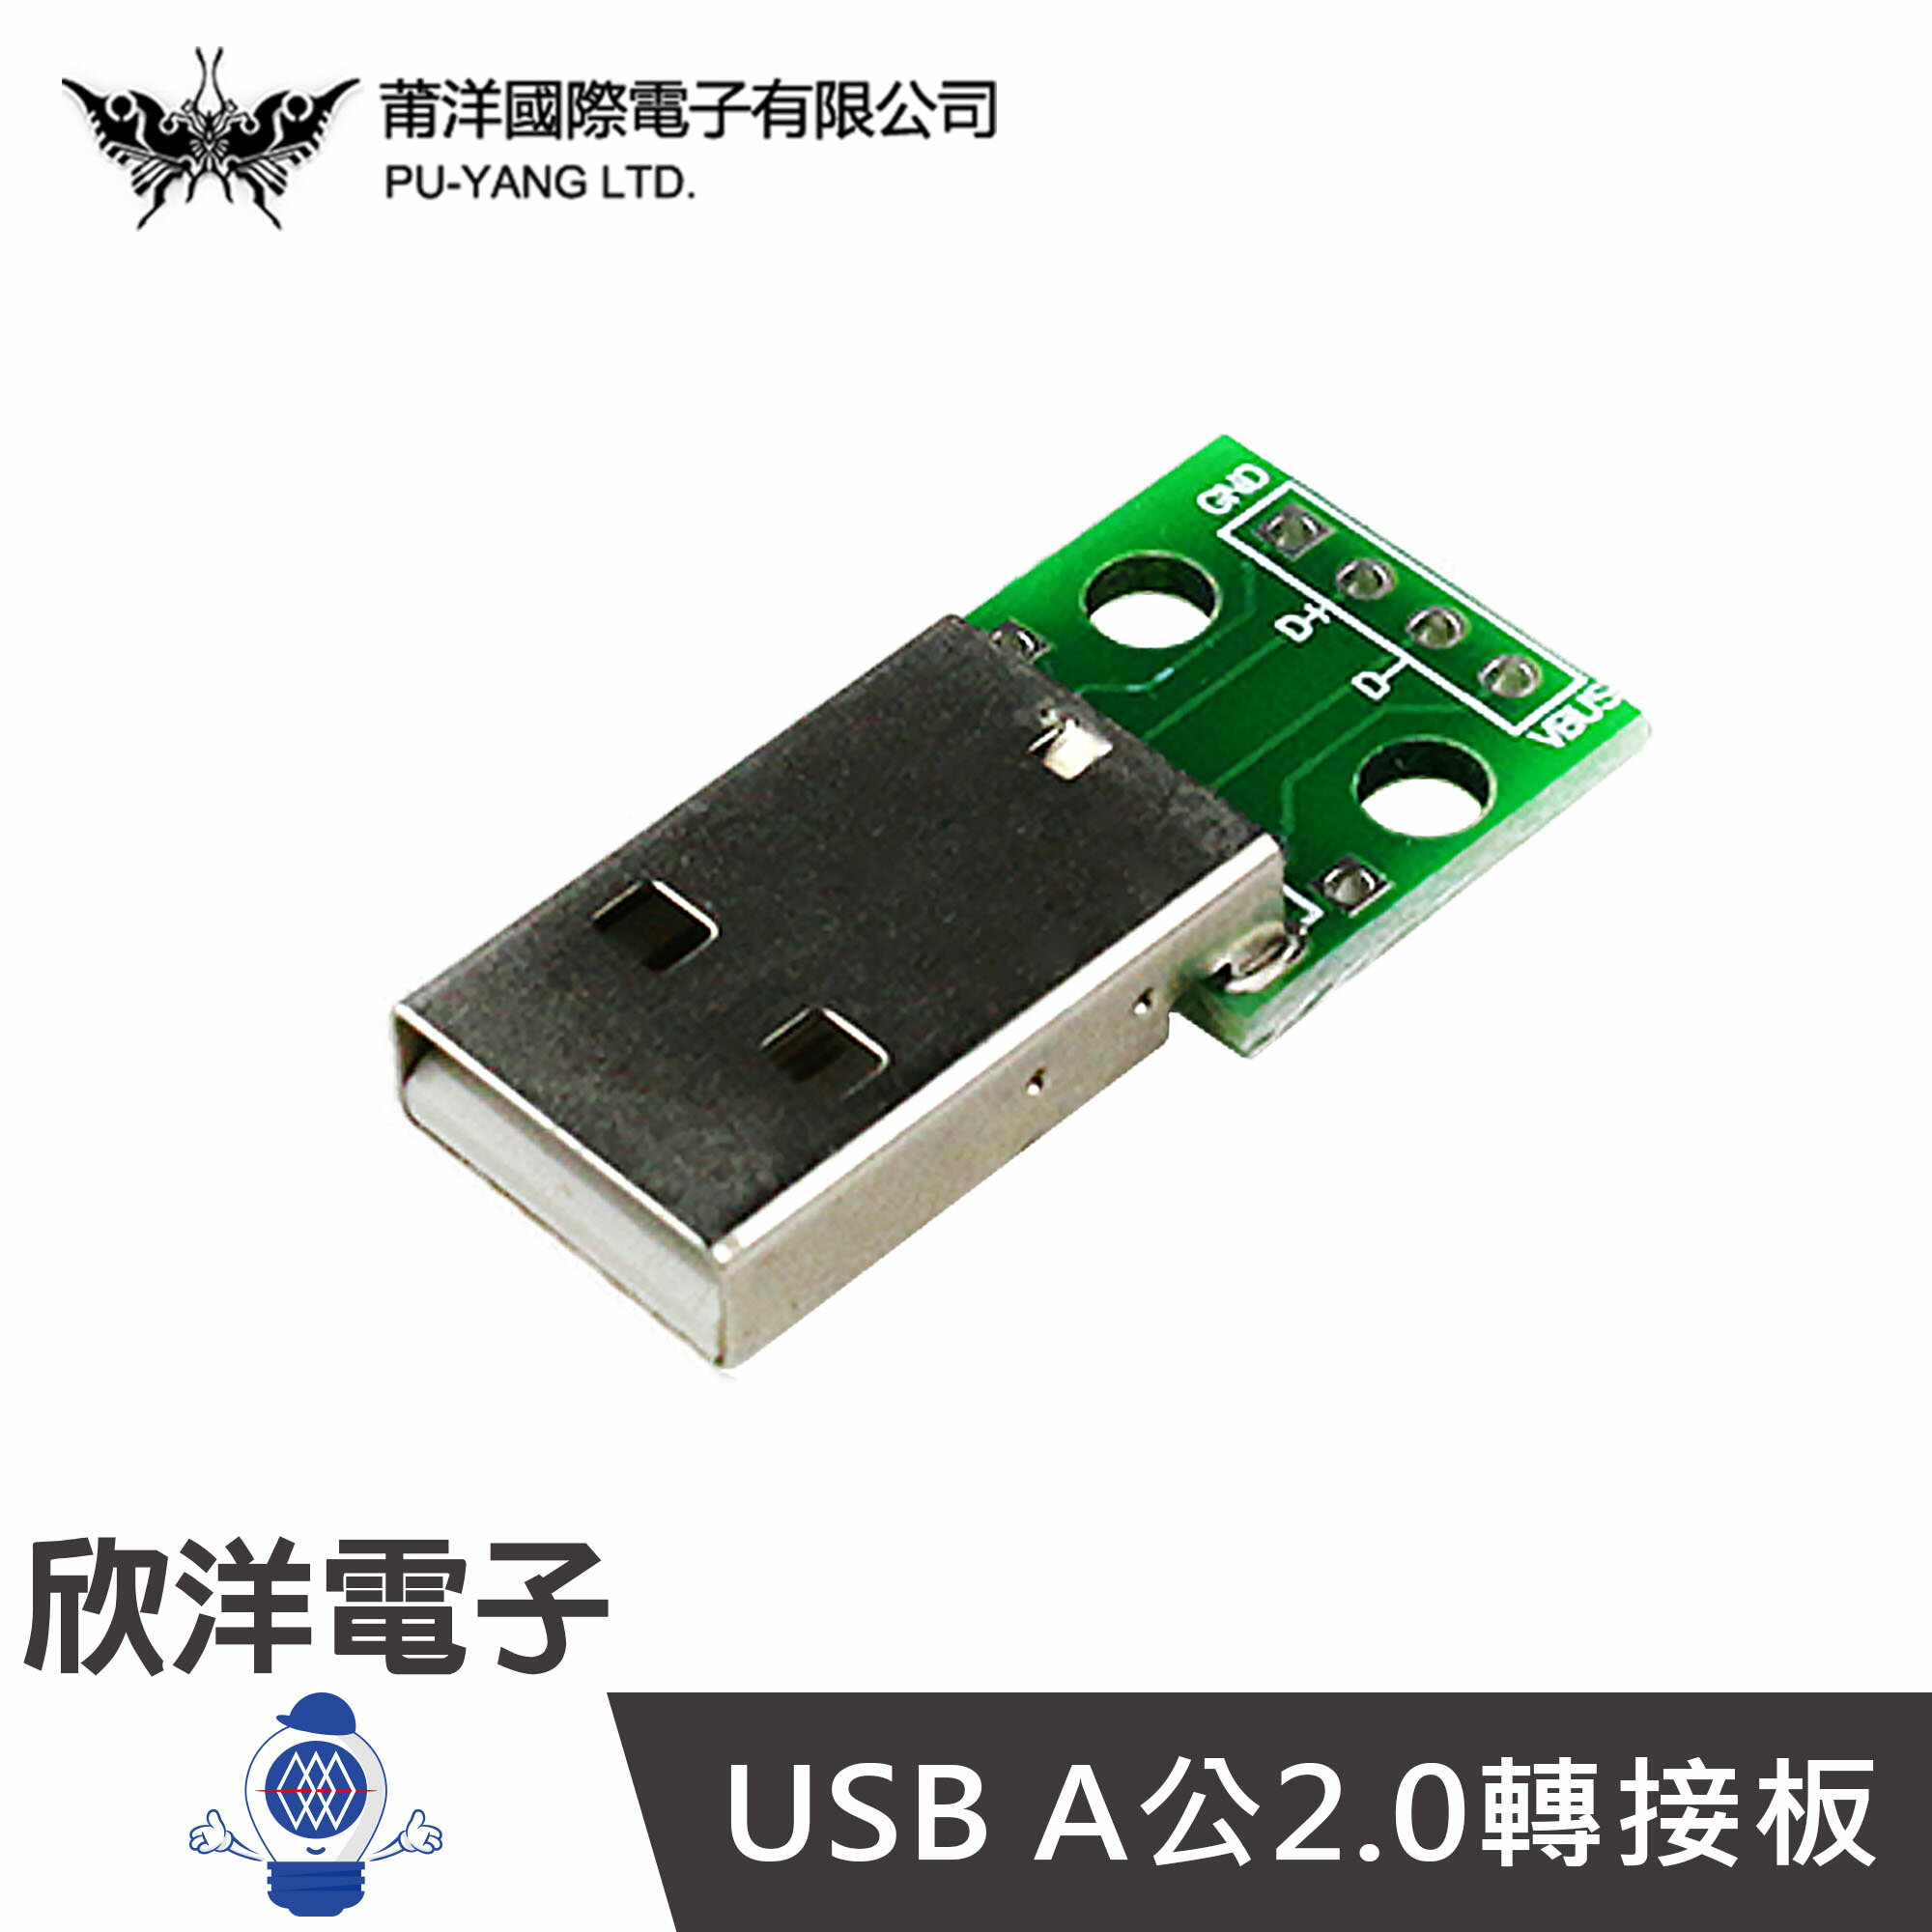 ※ 欣洋電子 ※ USB A公2.0轉接板 (1378A) /實驗室/學生模組/電子材料/電子工程/適用Arduino